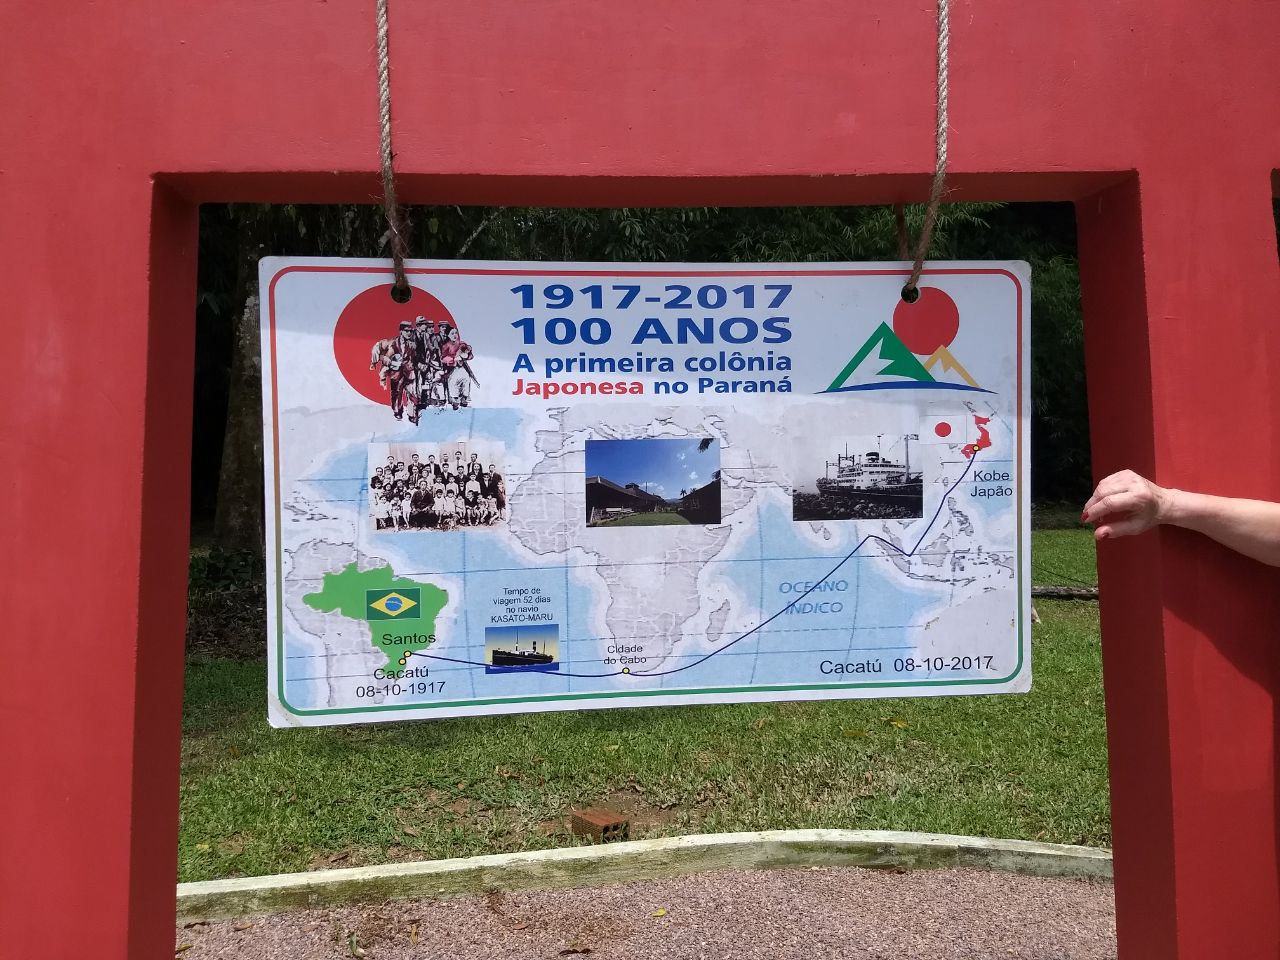  110 anos da imigração japonesa no Brasil: primeira colônia nipônica no Paraná foi formada em Antonina